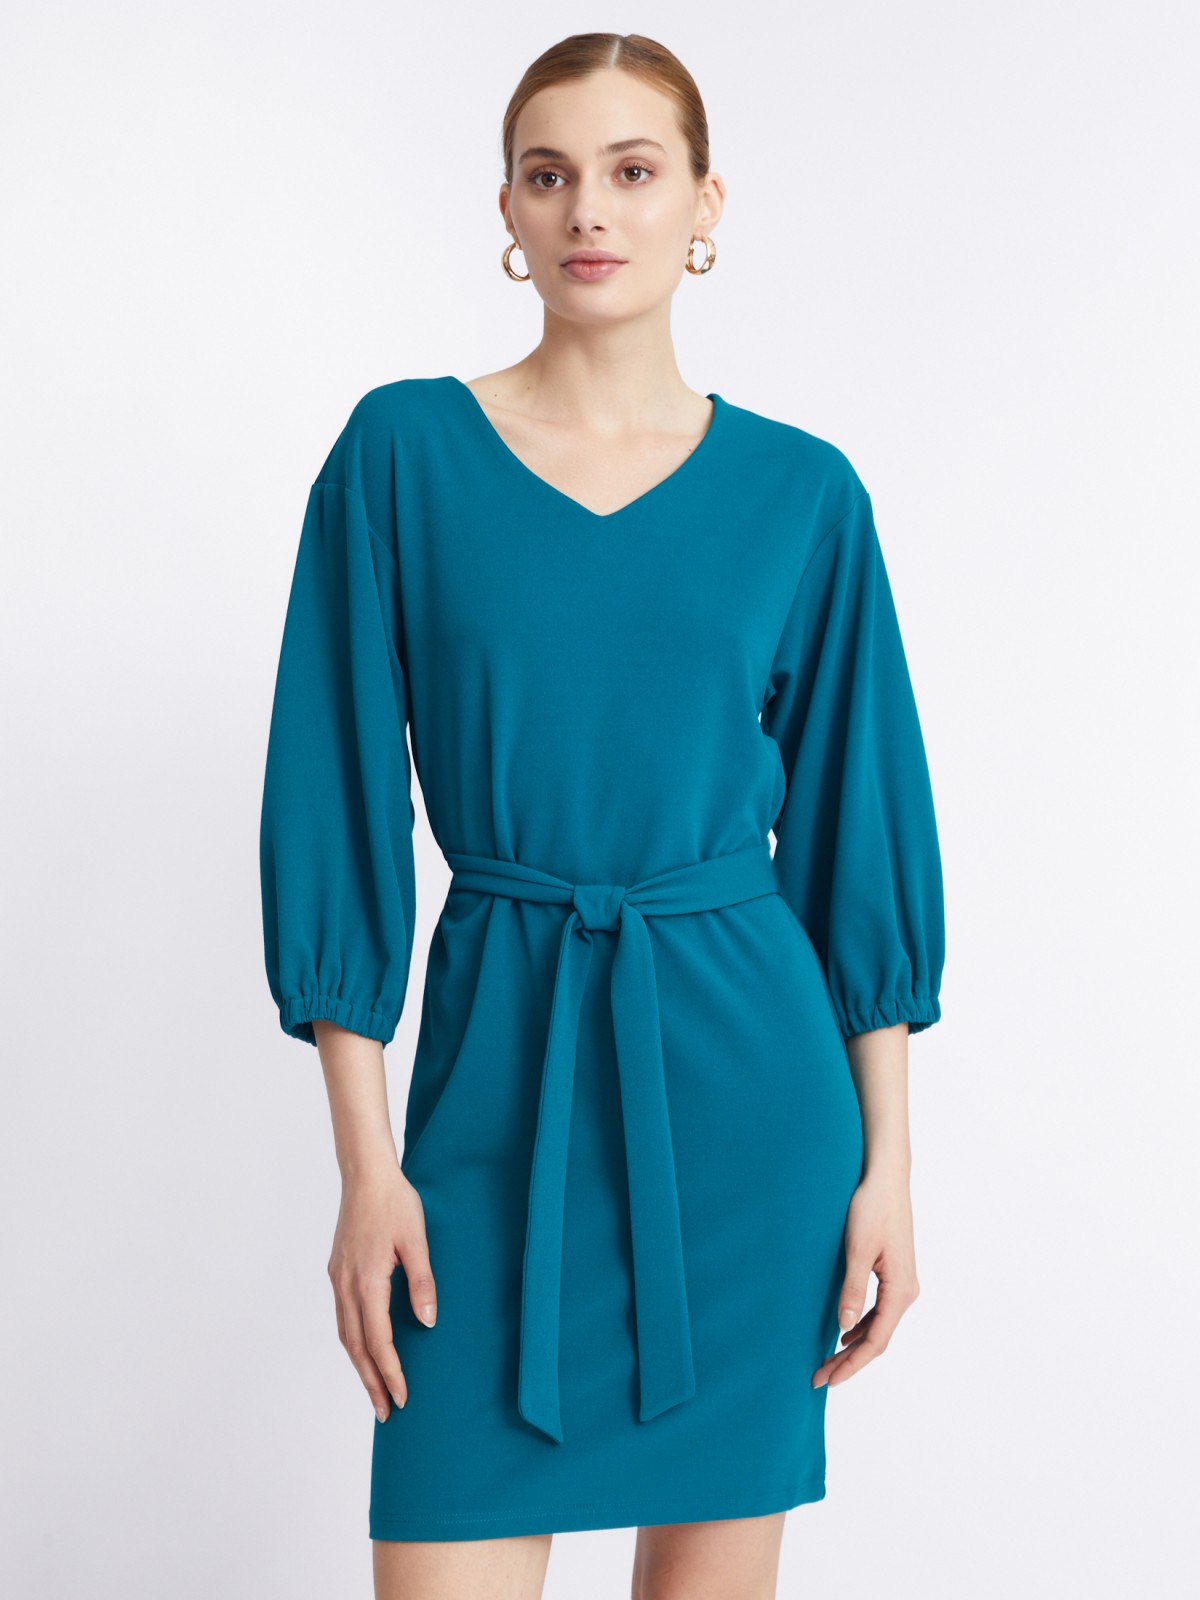 Платье с объёмными рукавами и поясом zolla 22331819F062, цвет темно-бирюзовый, размер S - фото 1